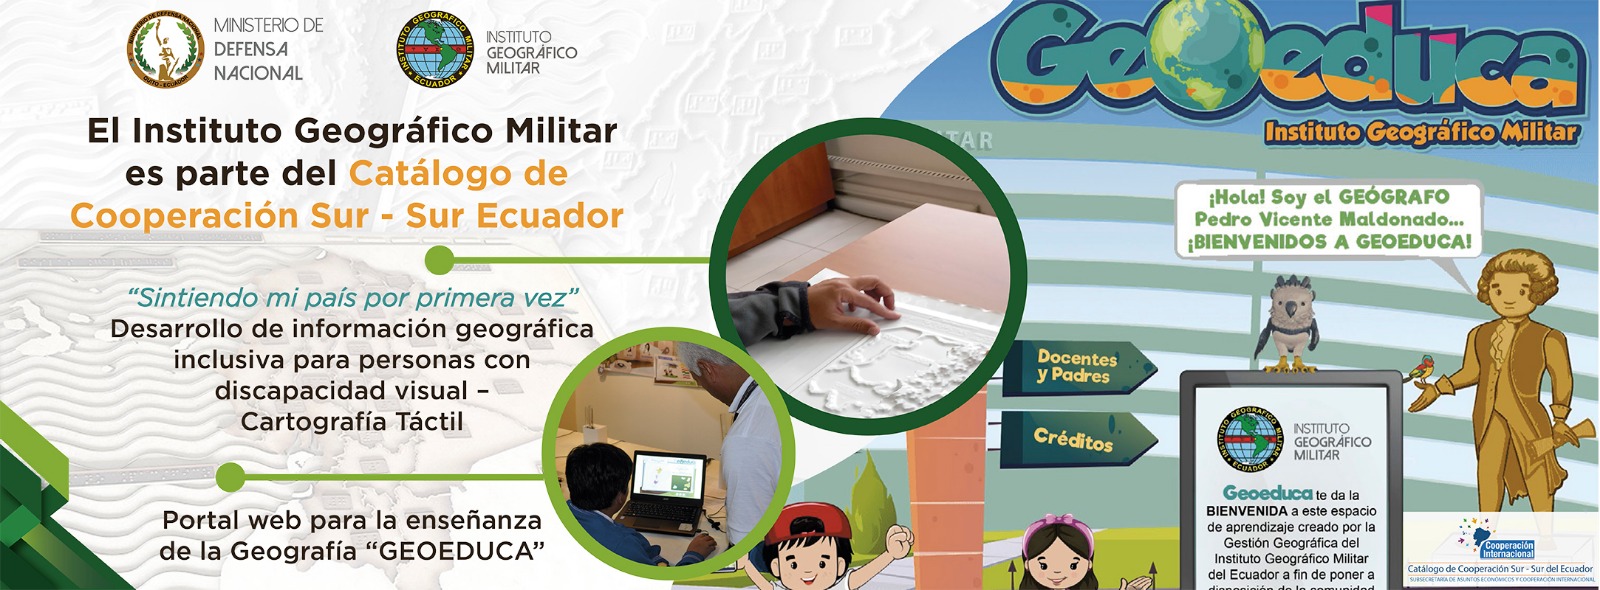 IGM es parte del Catálogo de Cooperación Sur Sur del Ecuador